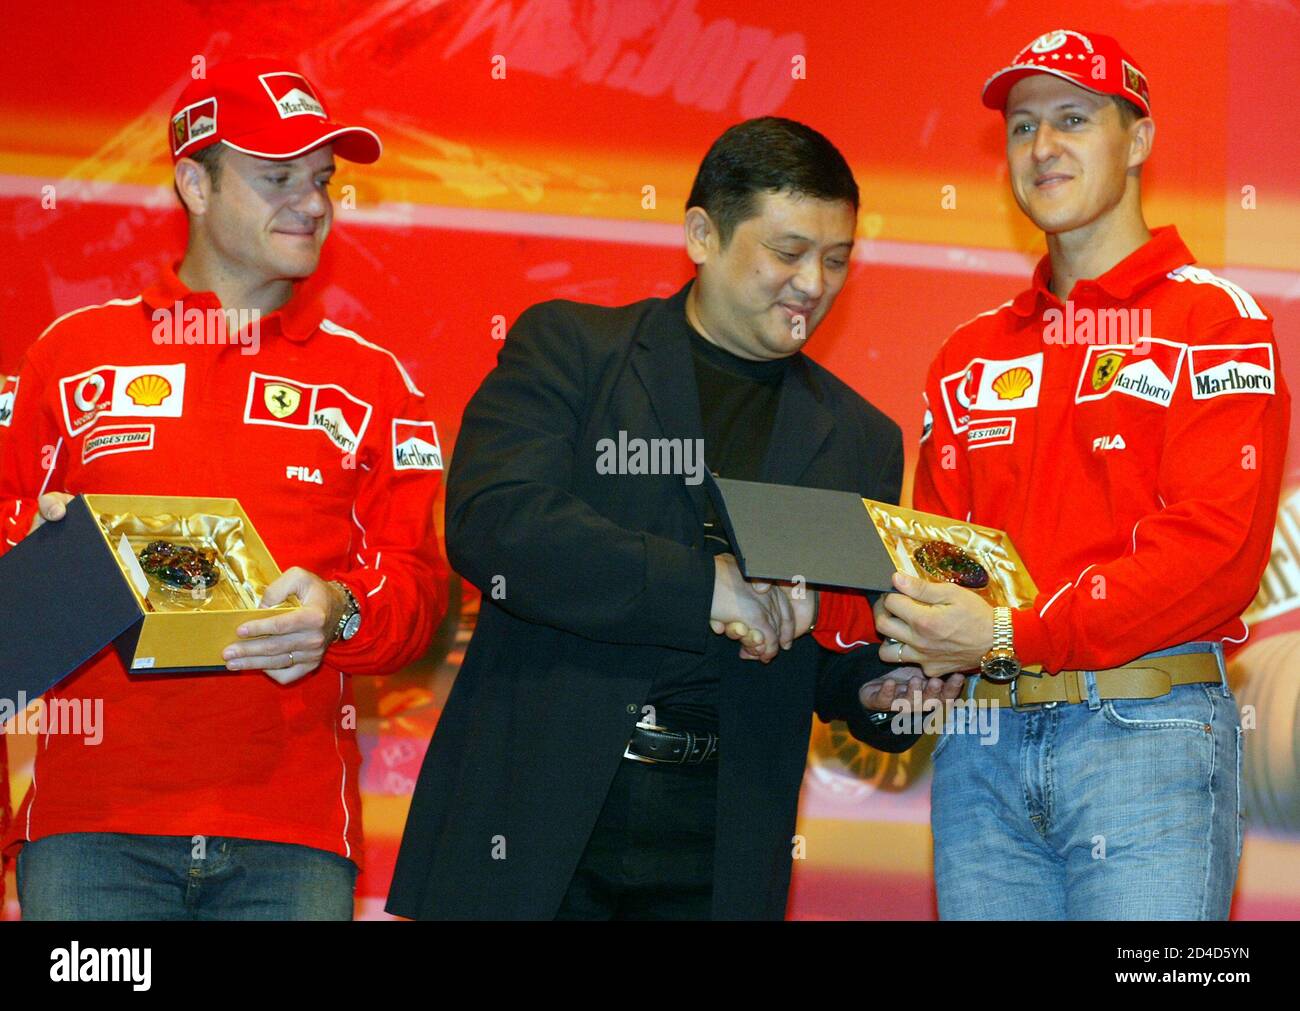 Ferrari's siebenfacher Formel-1-Champion Michael Schumacher (R) erhält ein Geschenk von Yu Zhifei, Deputy General Manager of Shanghai Circuit, während Teamkollege Rubens Barrichello (L) nach einer Pressekonferenz in Shanghai am 22. September 2004 betreut. Shanghai wird am 26. September den ersten chinesischen Grand Prix mit einer atemberaubenden Strecke und einem Ausverkauf von mindestens 150,000 Zuschauern ausrichten. Einer von zwei Grand prix-Debüts in diesem Jahr - der andere war Bahrains erstes Rennen im Nahen Osten -, die es der Formel 1 ermöglichen, sich als eine wahrhaft globale Meisterschaft zu rühmen. REUTERS/Claro Cortes IV CC/SH Stockfoto